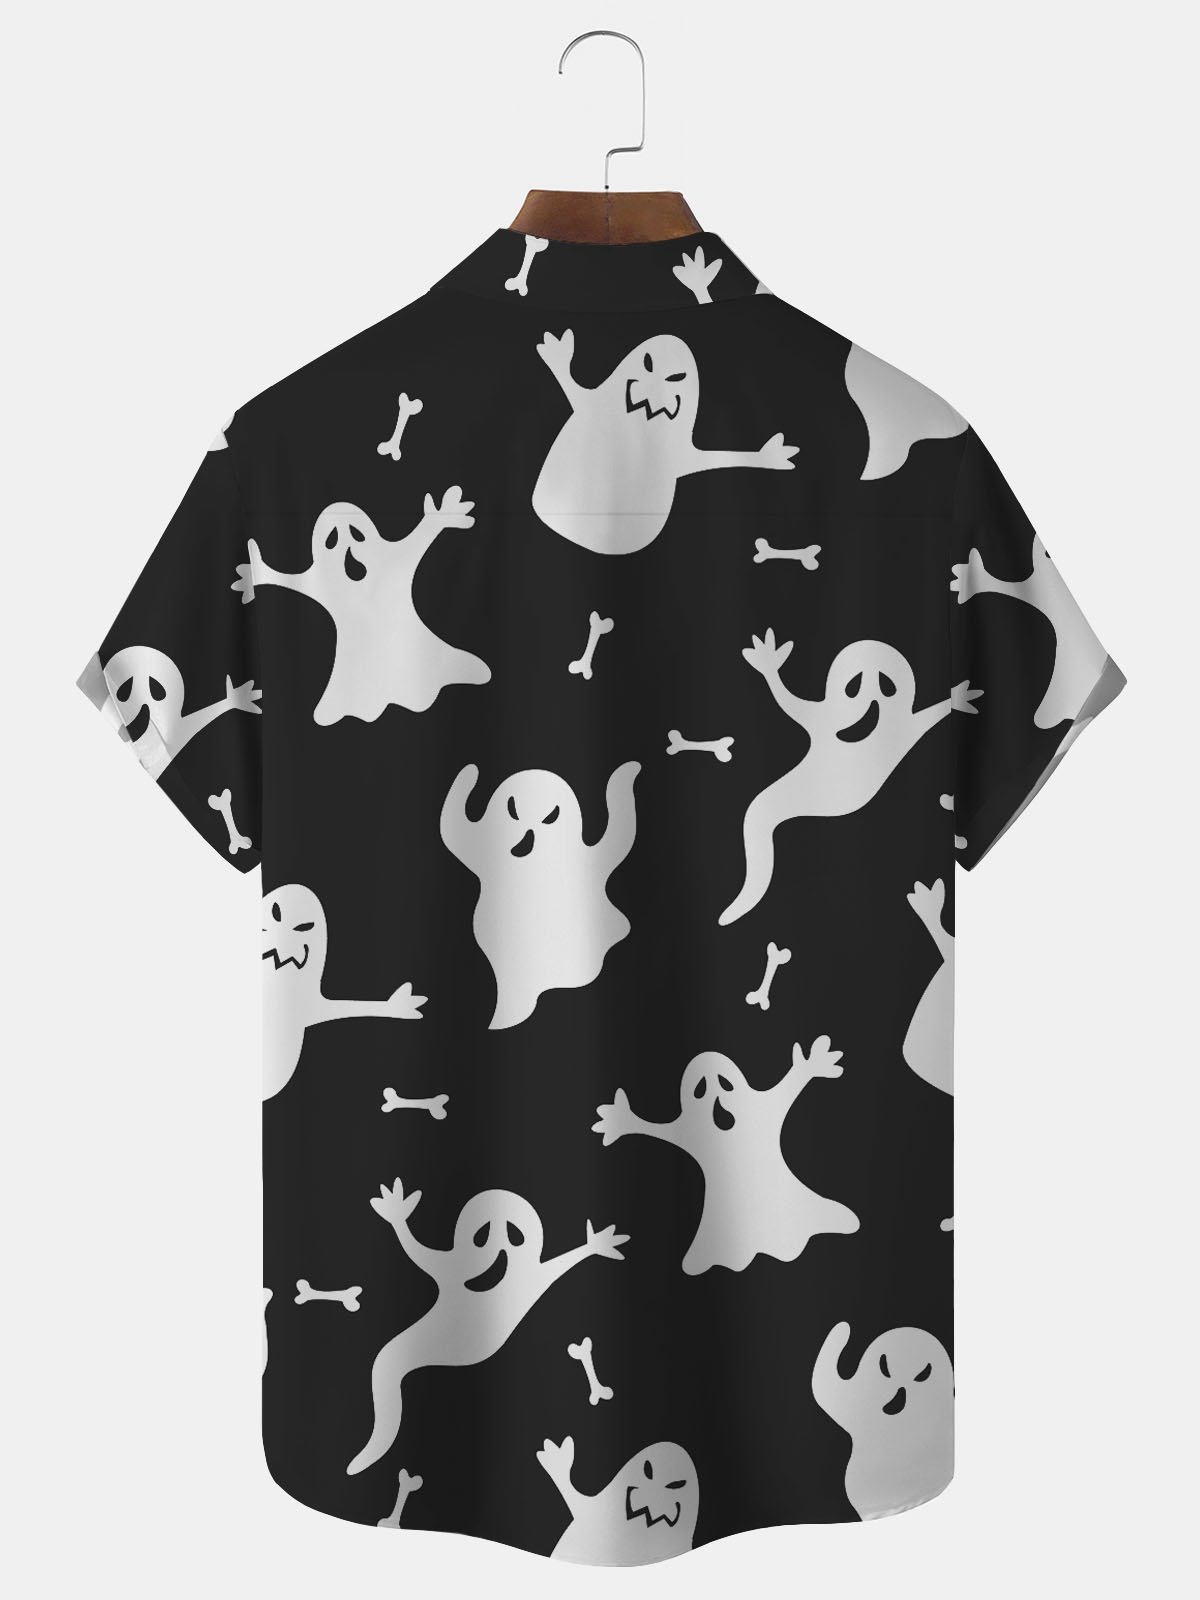 Royaura Halloween Ghost Print Men's Button Pocket Short Sleeve Shirt